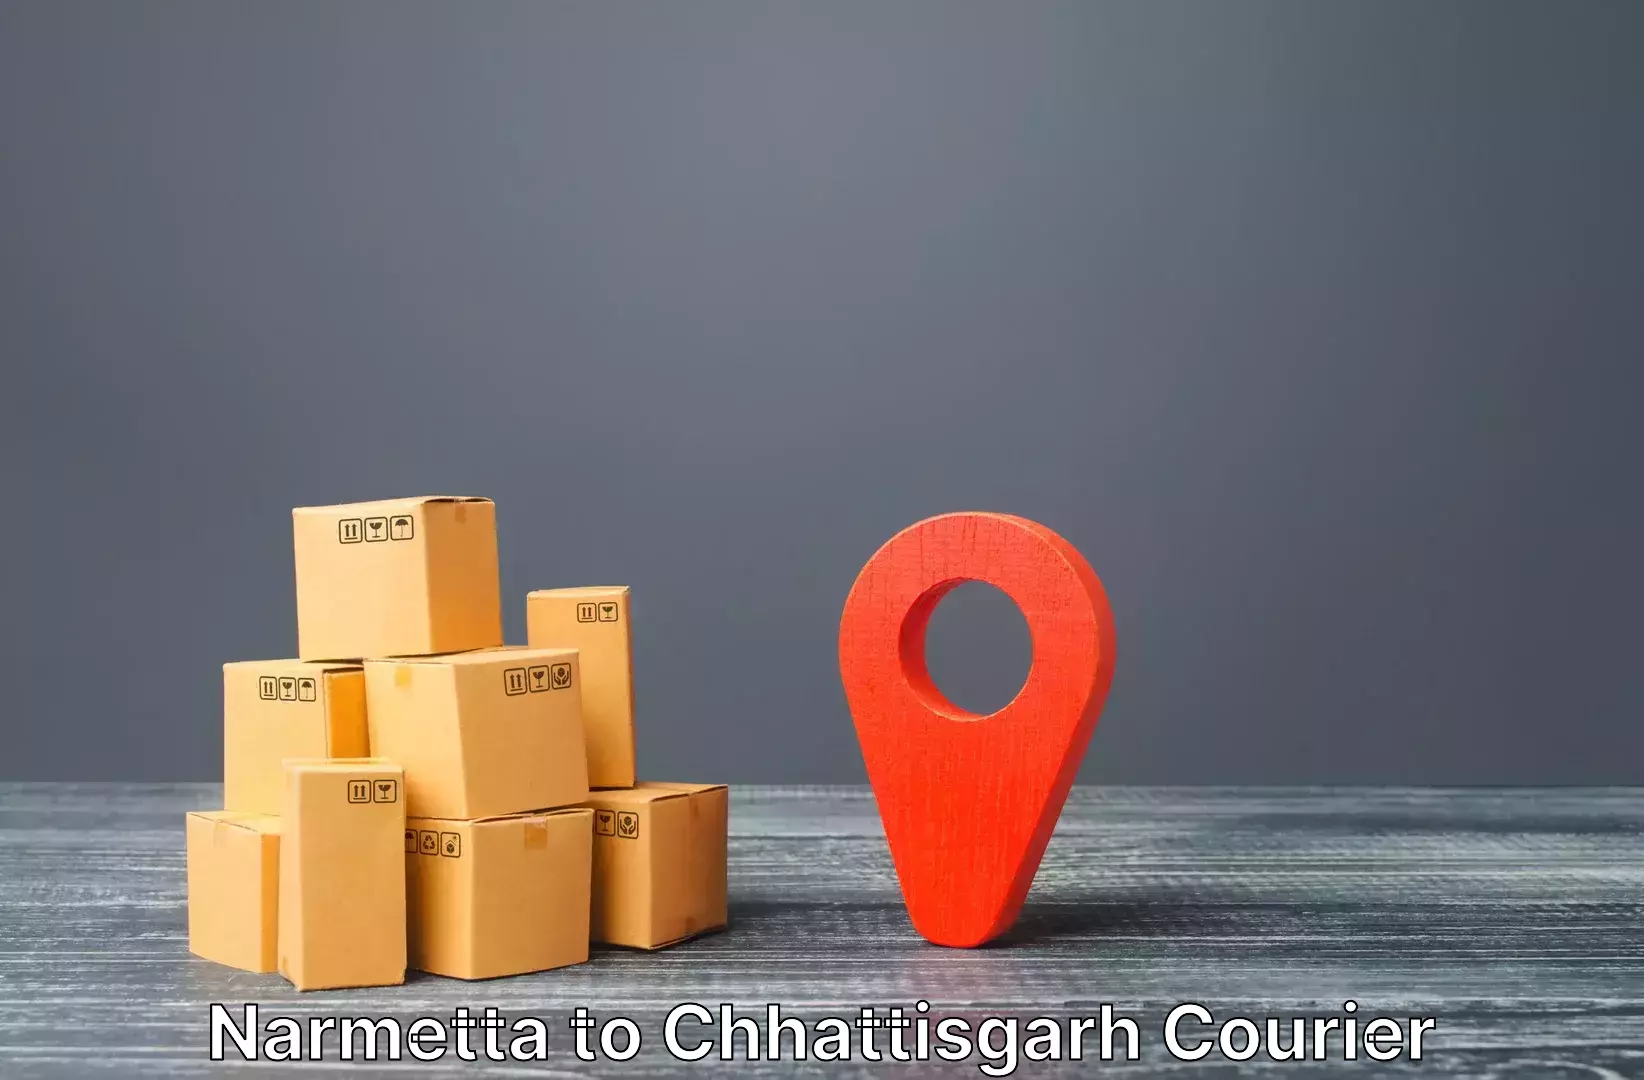 Luggage delivery news Narmetta to Chhattisgarh